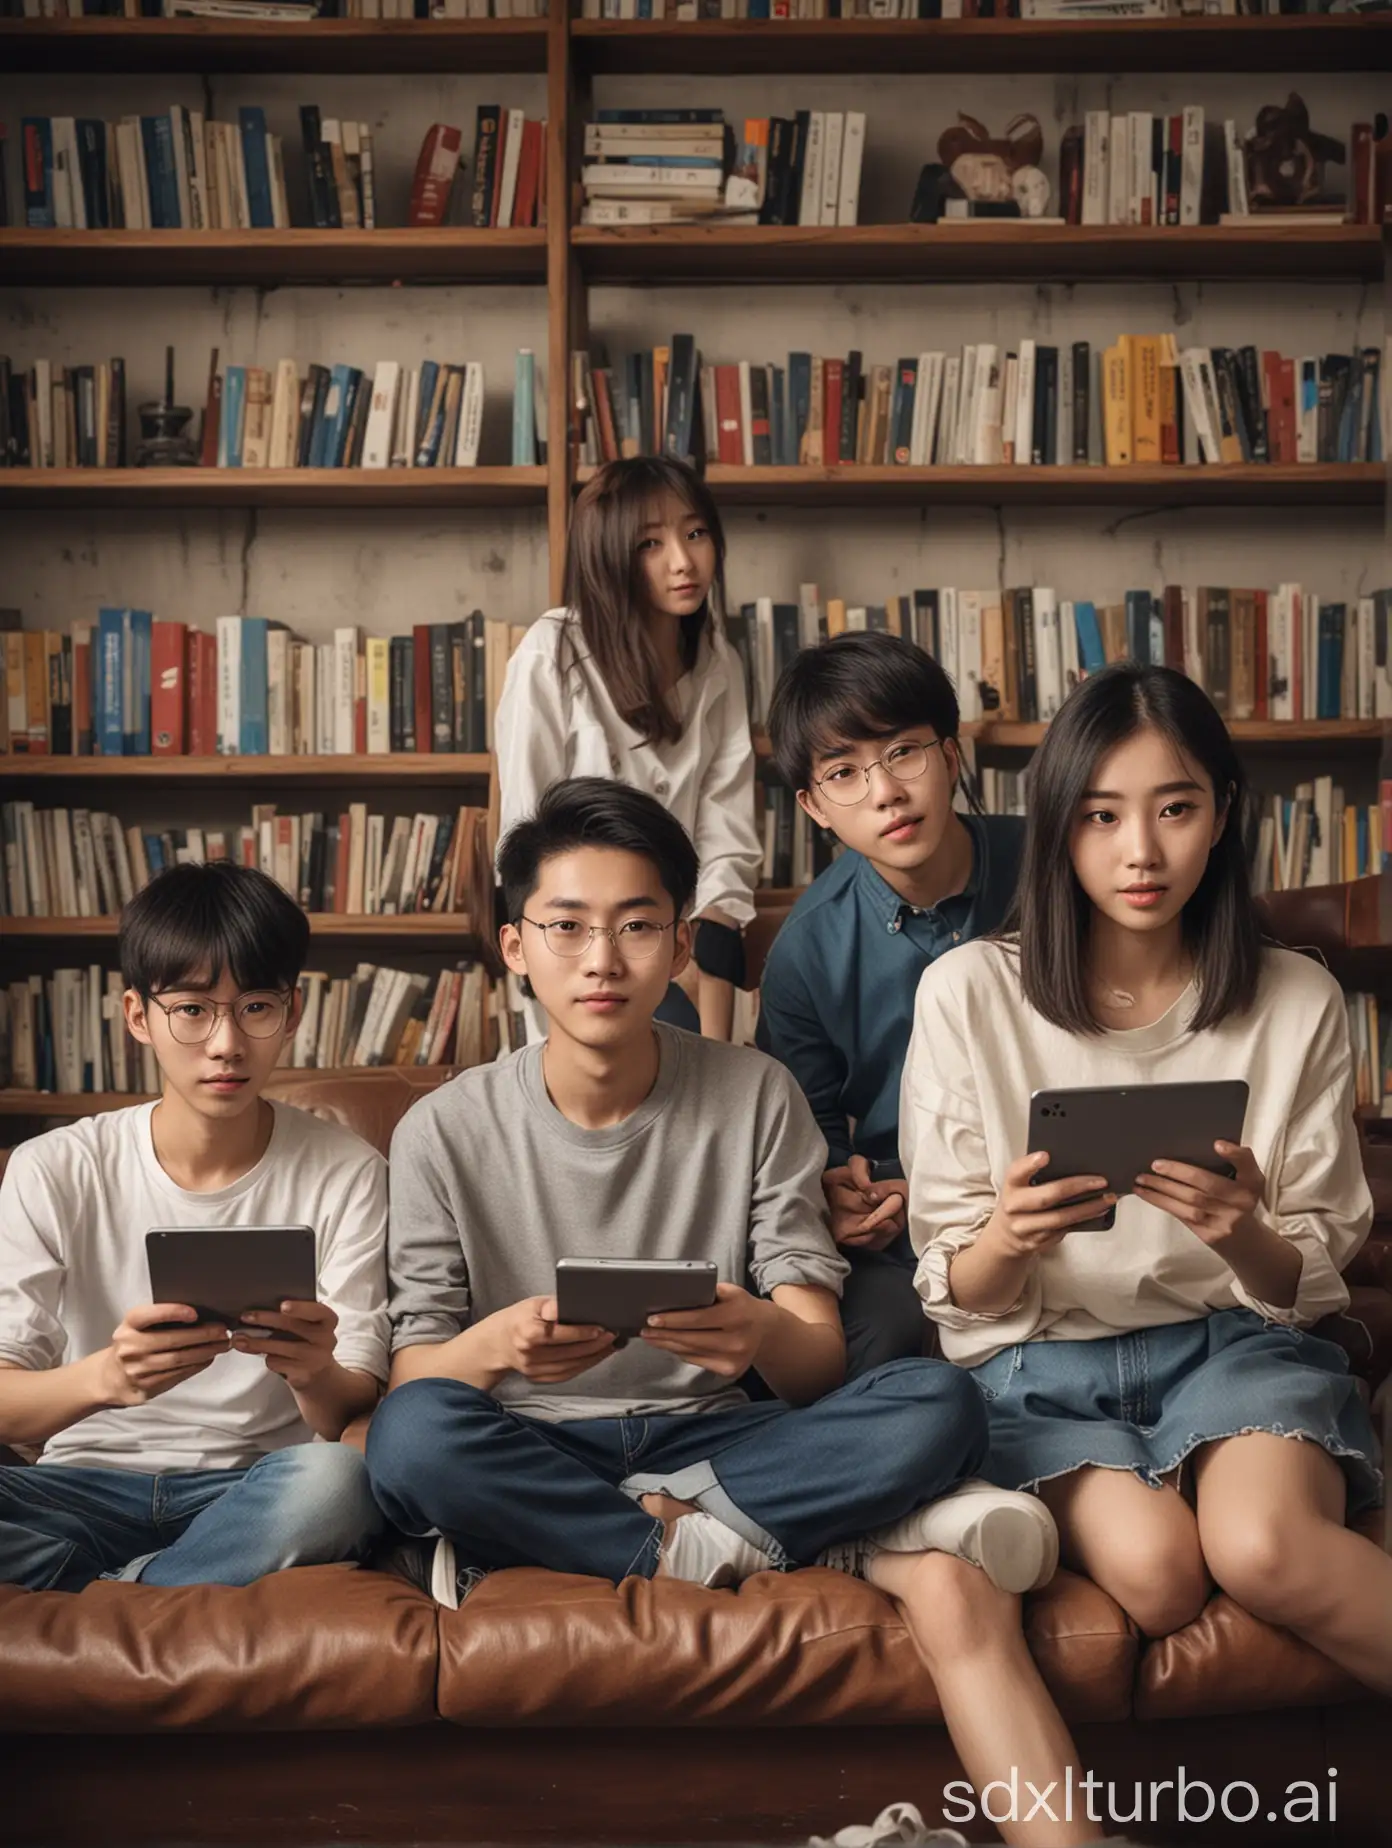 四个青春、充满书卷气的中国少年（两男两女），手里拿着各种高科技电子设备